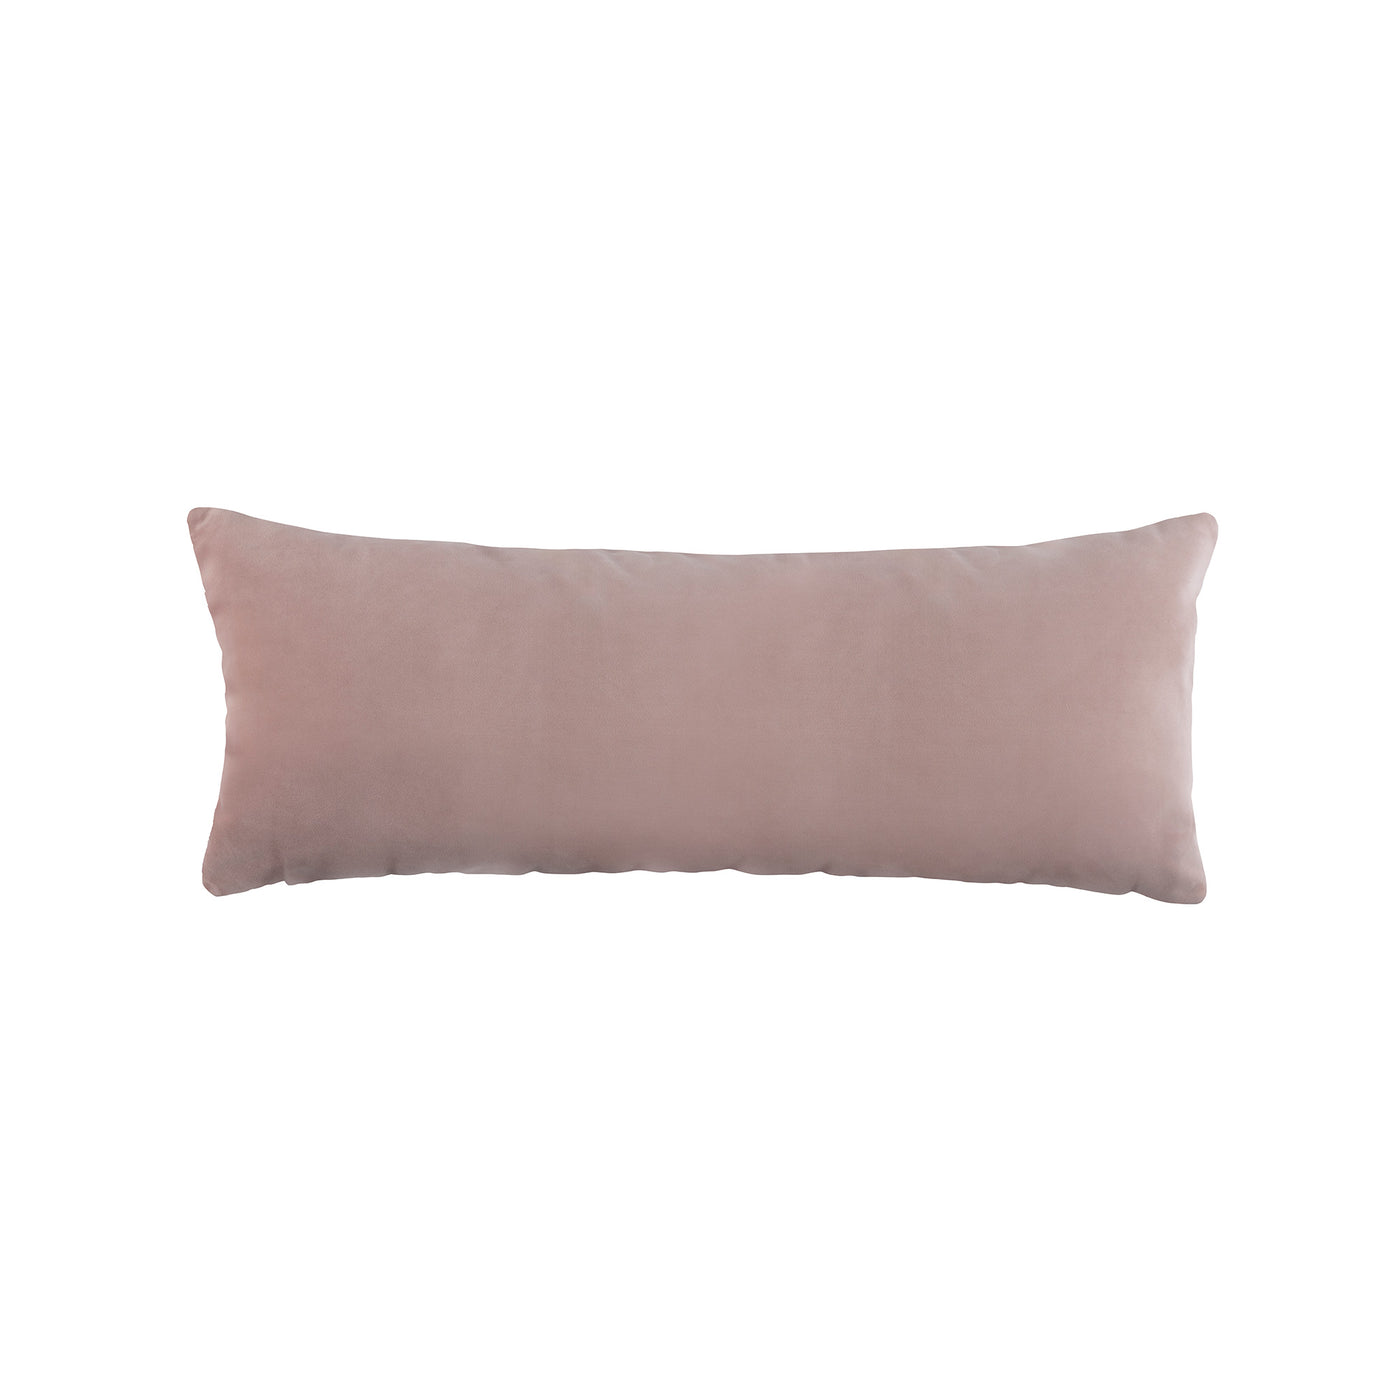 Vivid Cameo Long Rectangle Pillow (18x46)